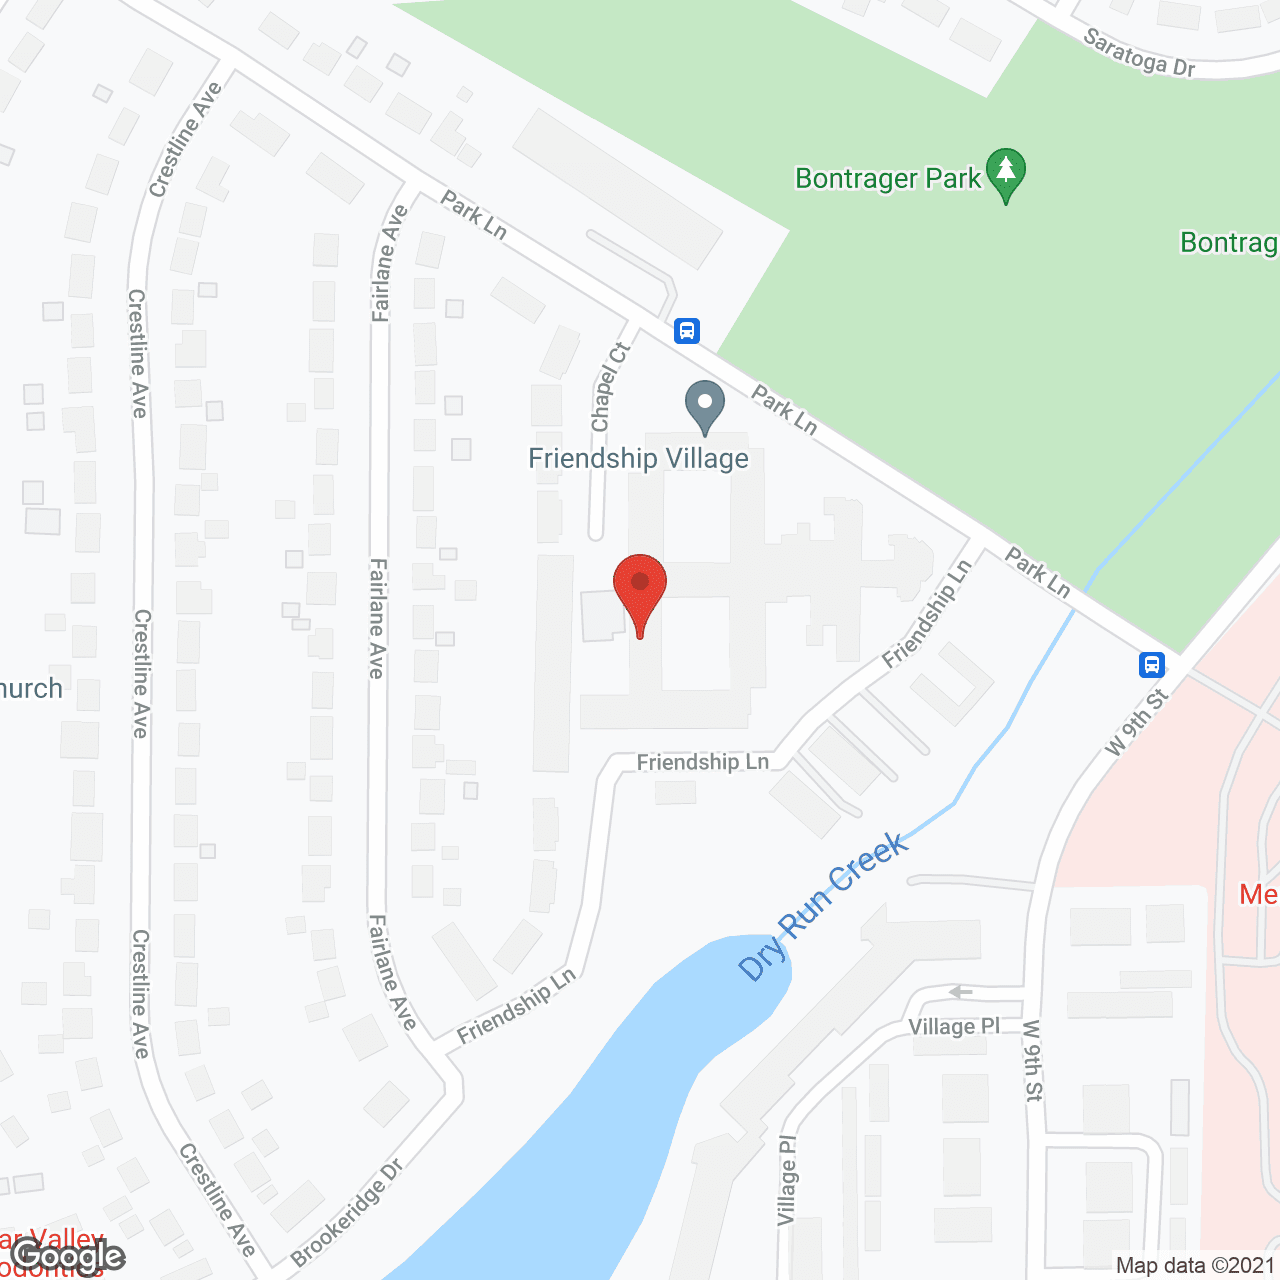 Friendship Village Center in google map